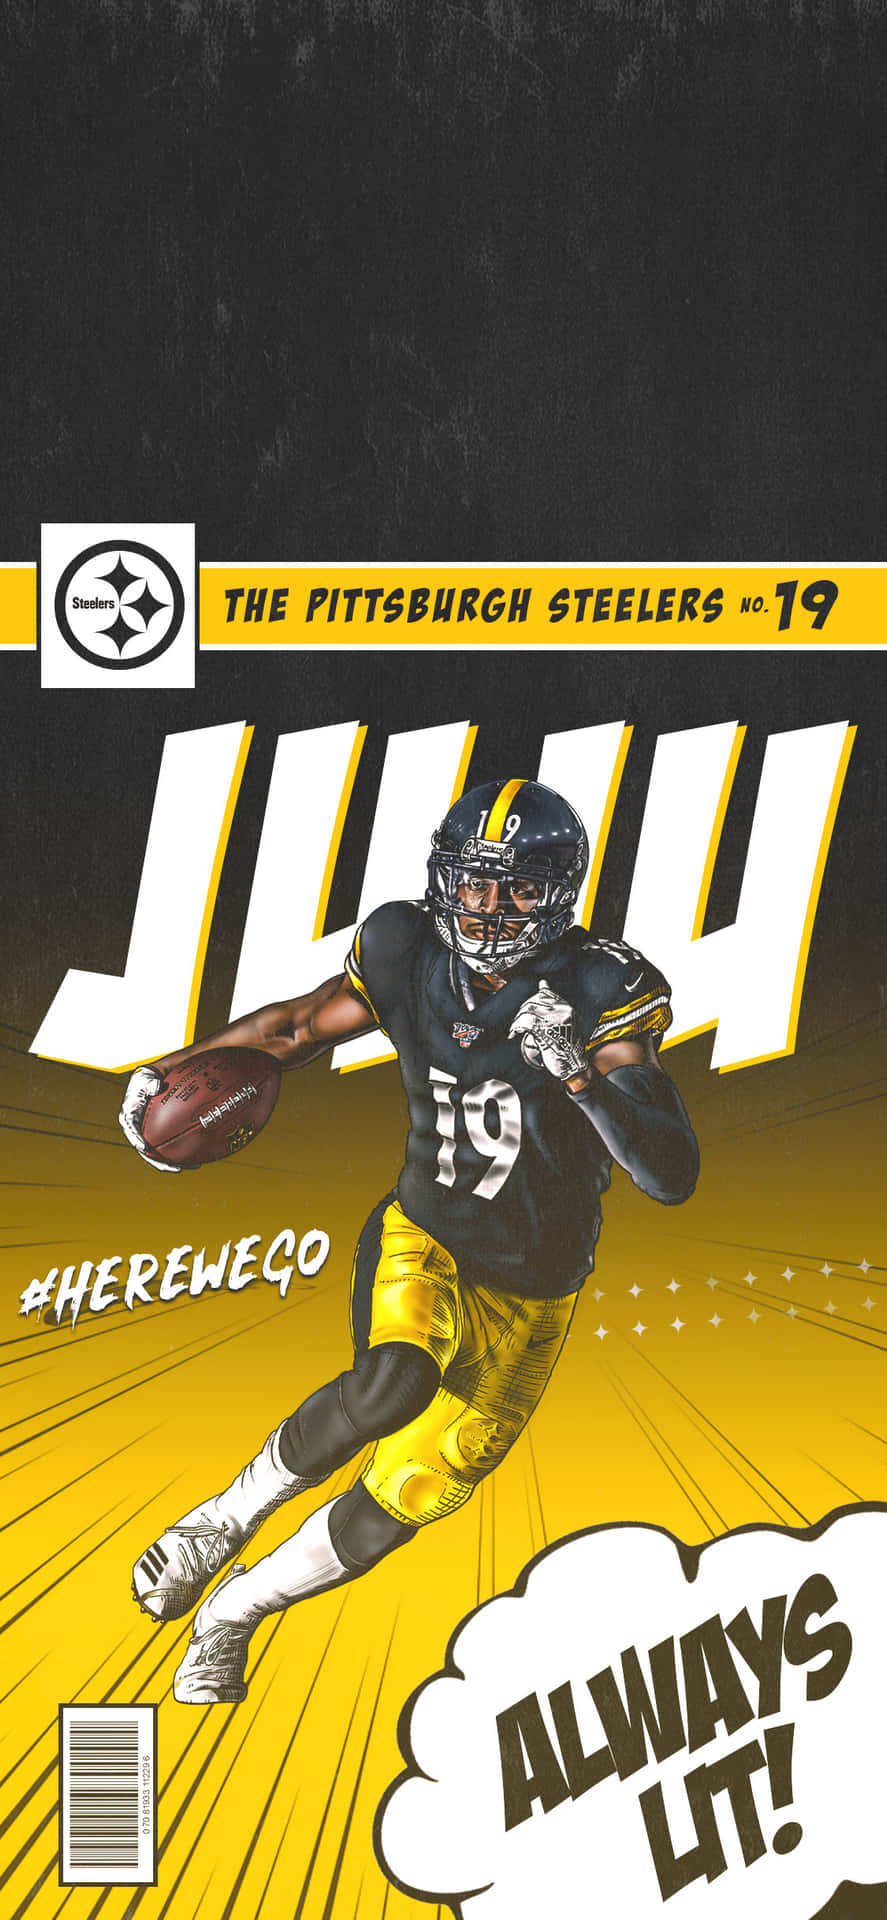 Erhaltensie Die Neuesten Steelers-nachrichten, Statistiken Und Highlights Auf Ihr Handy Mit Einem Steelers-iphone-hintergrundbild Wallpaper